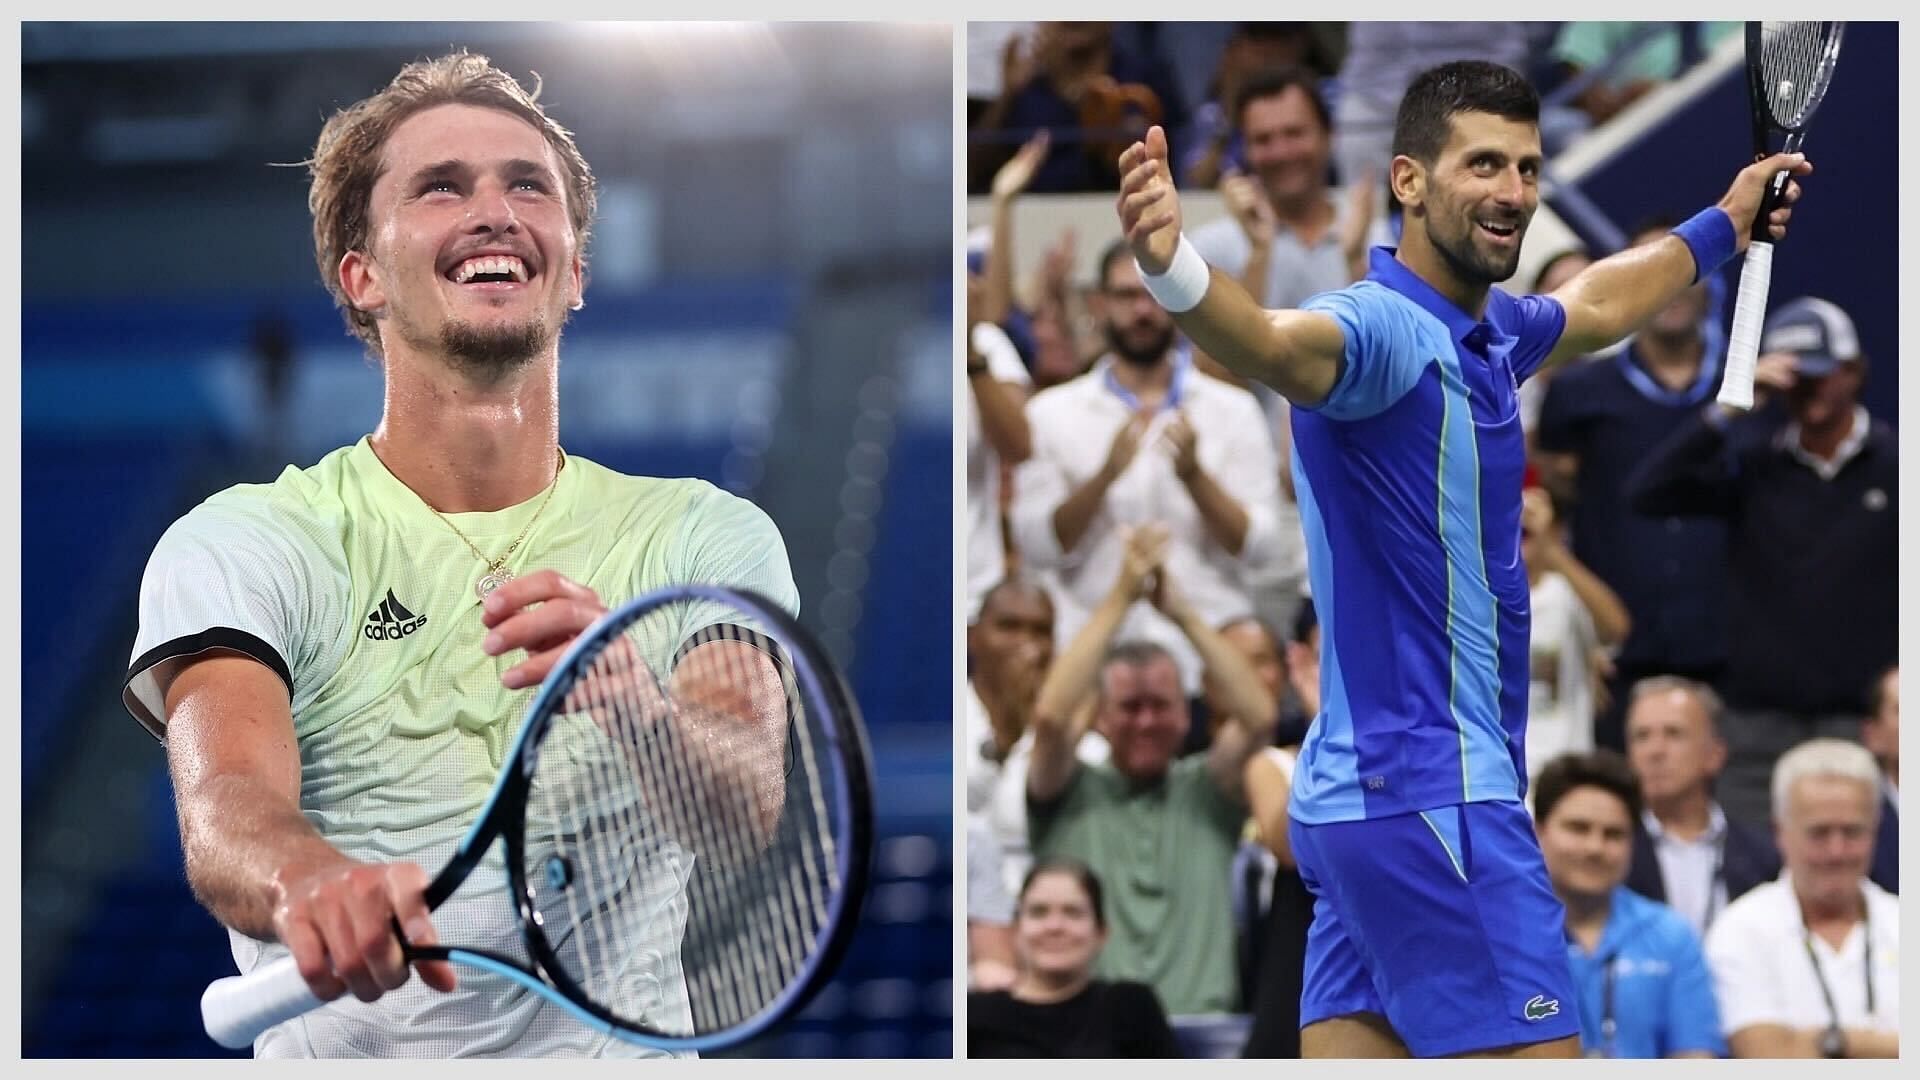  Alexander Zverev lauds Novak Djokovic on US Open win